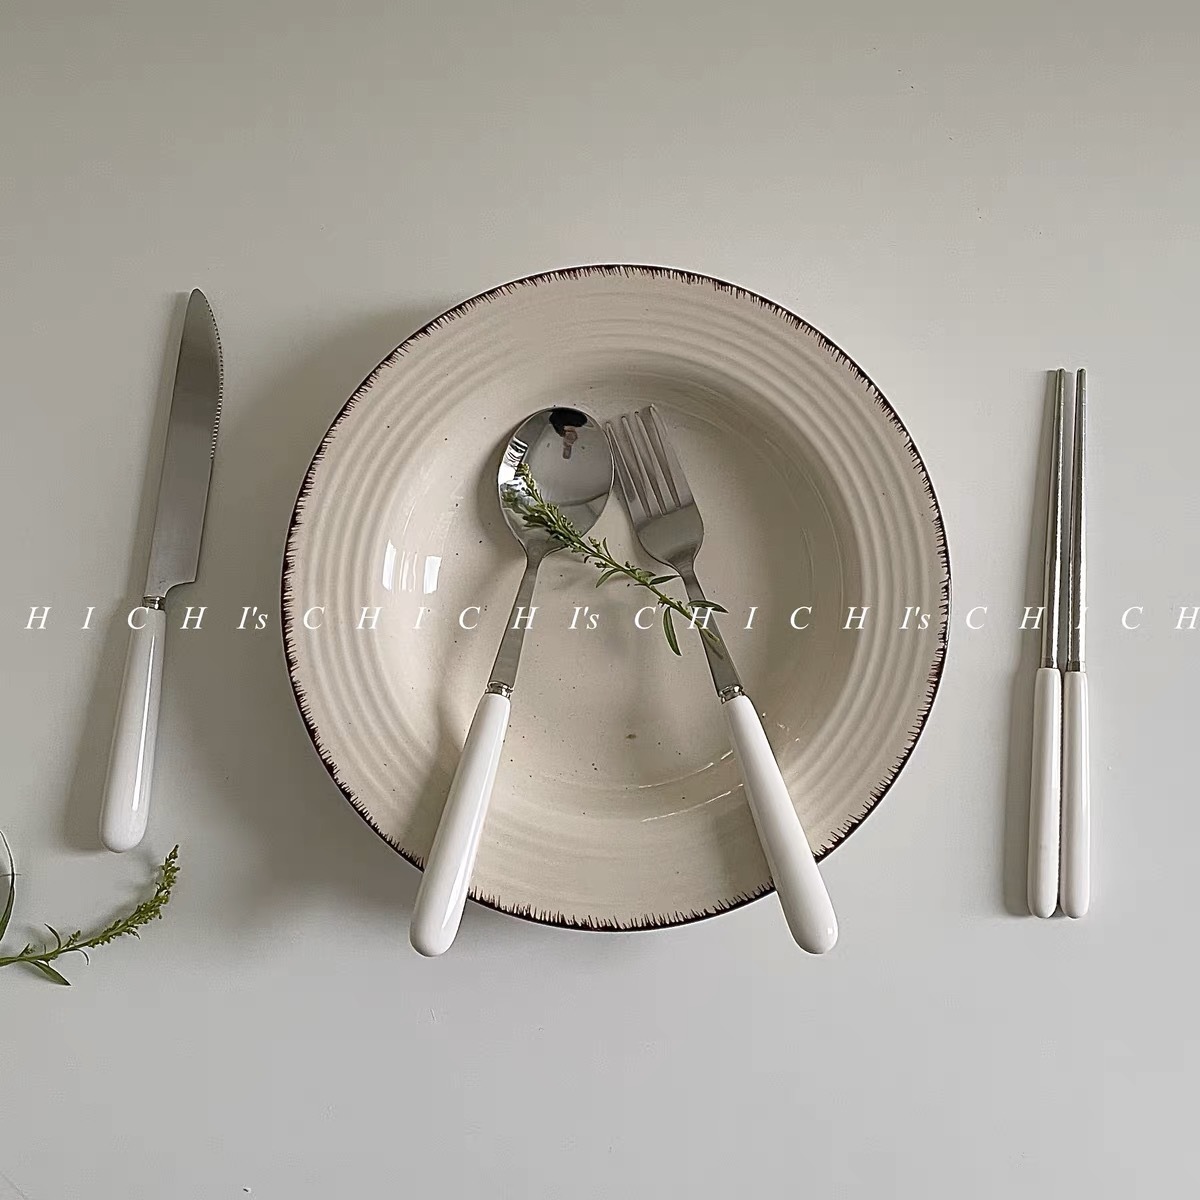 白色手柄纯色勺子 家用筷子水果叉汤勺不锈钢餐具咖啡勺便携餐具